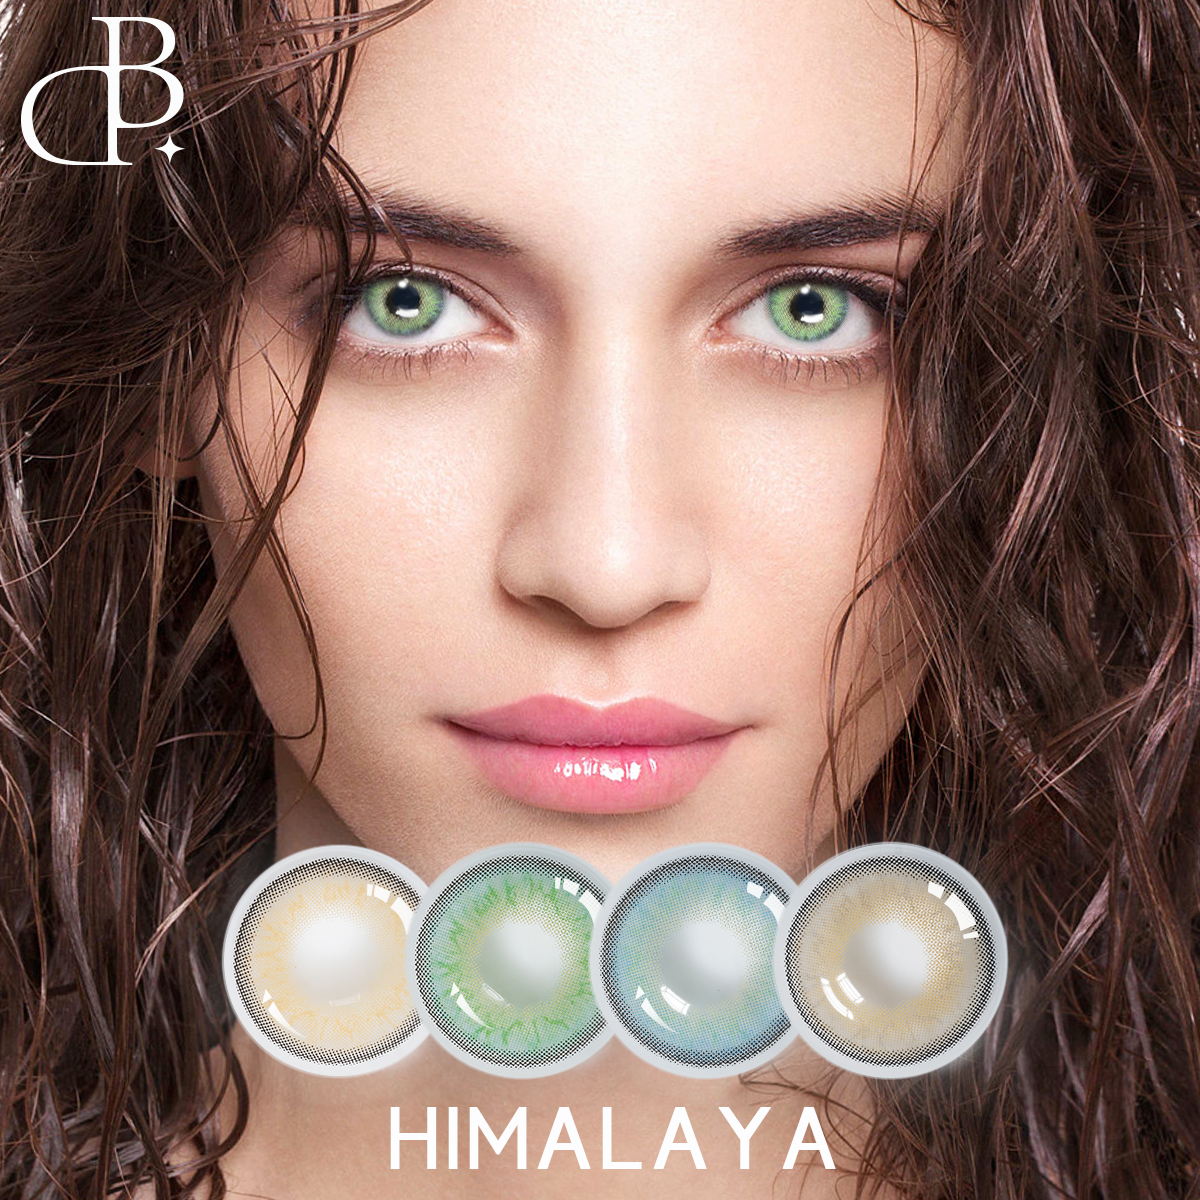 HIMALAYA Oem Private Label Frisk udseende farve øjenkontaktlinser til kosmetiske billige receptpligtige farvede kontakter